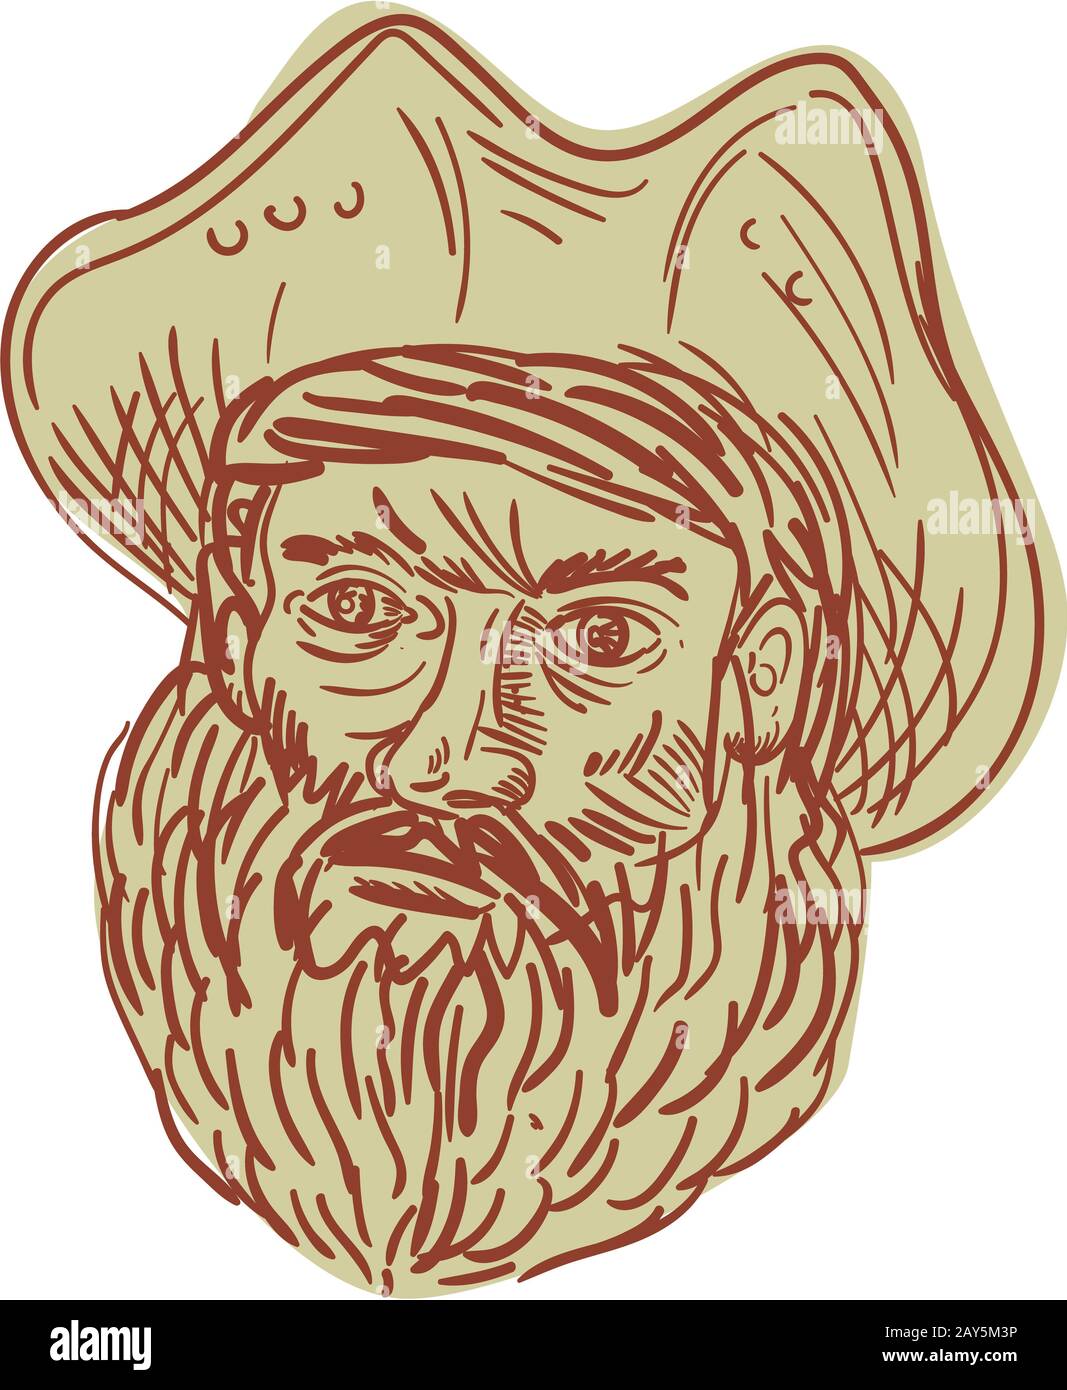 Pirate Head Beard Drawing Stock Photo